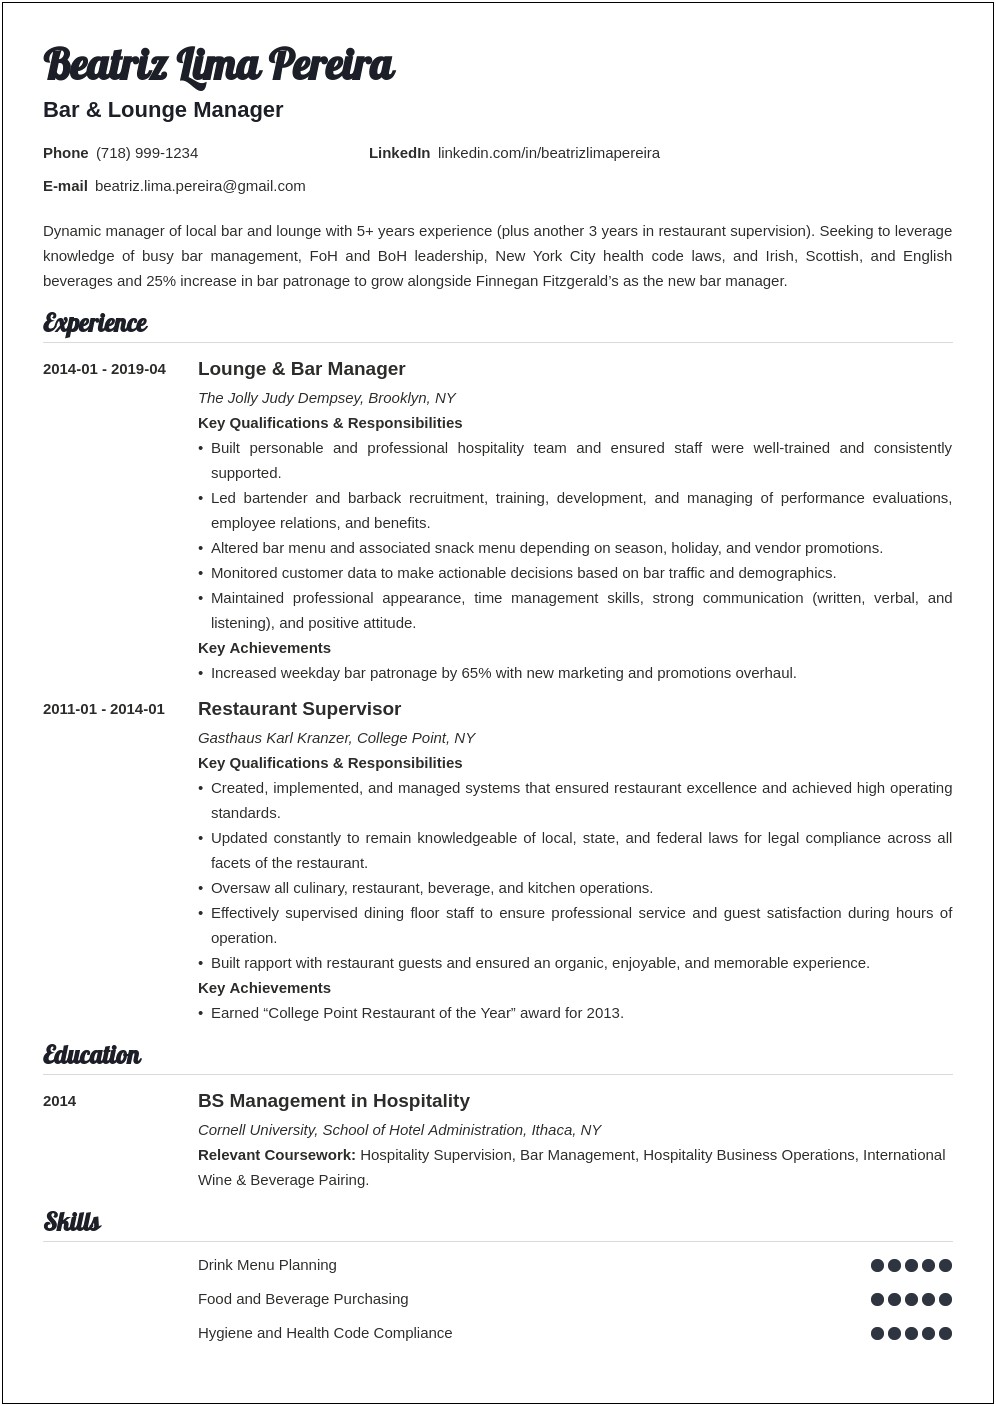 Resume Description For Server Manager